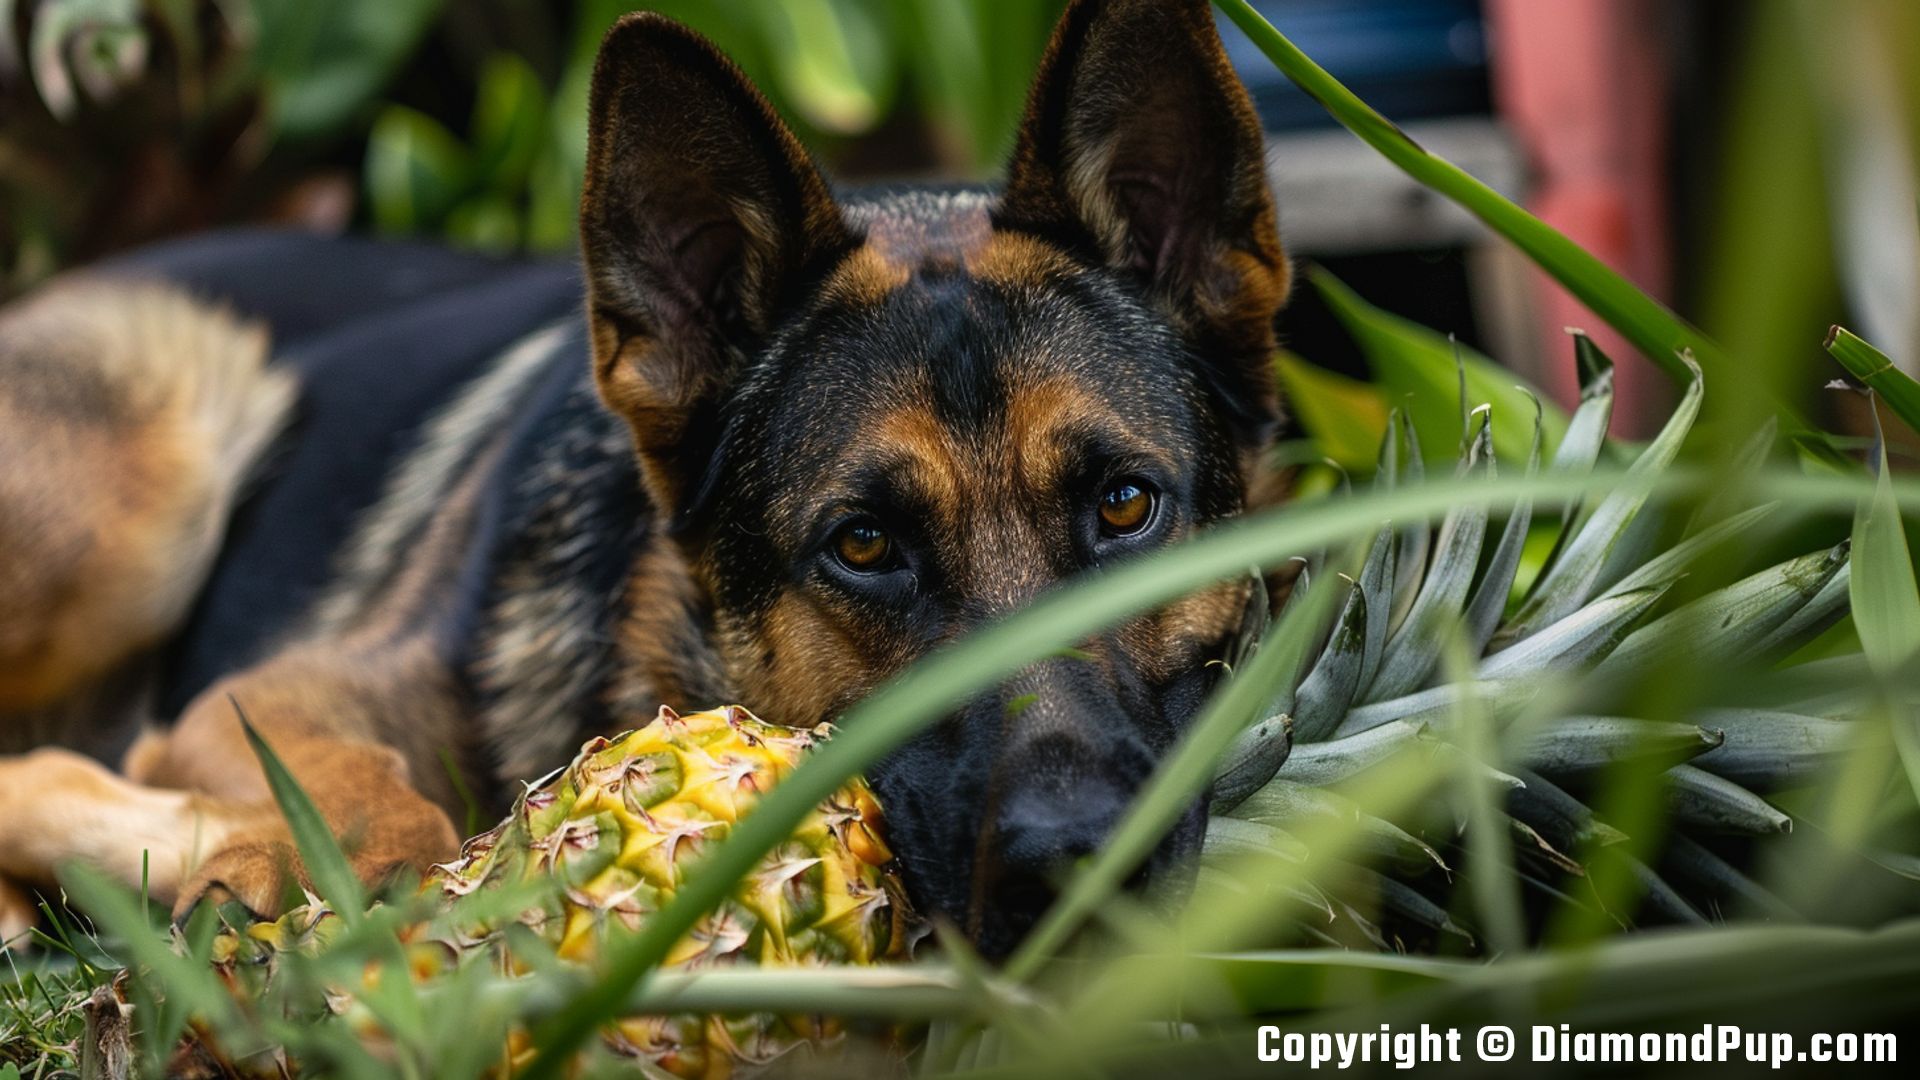 Image of German Shepherd Eating Pineapple